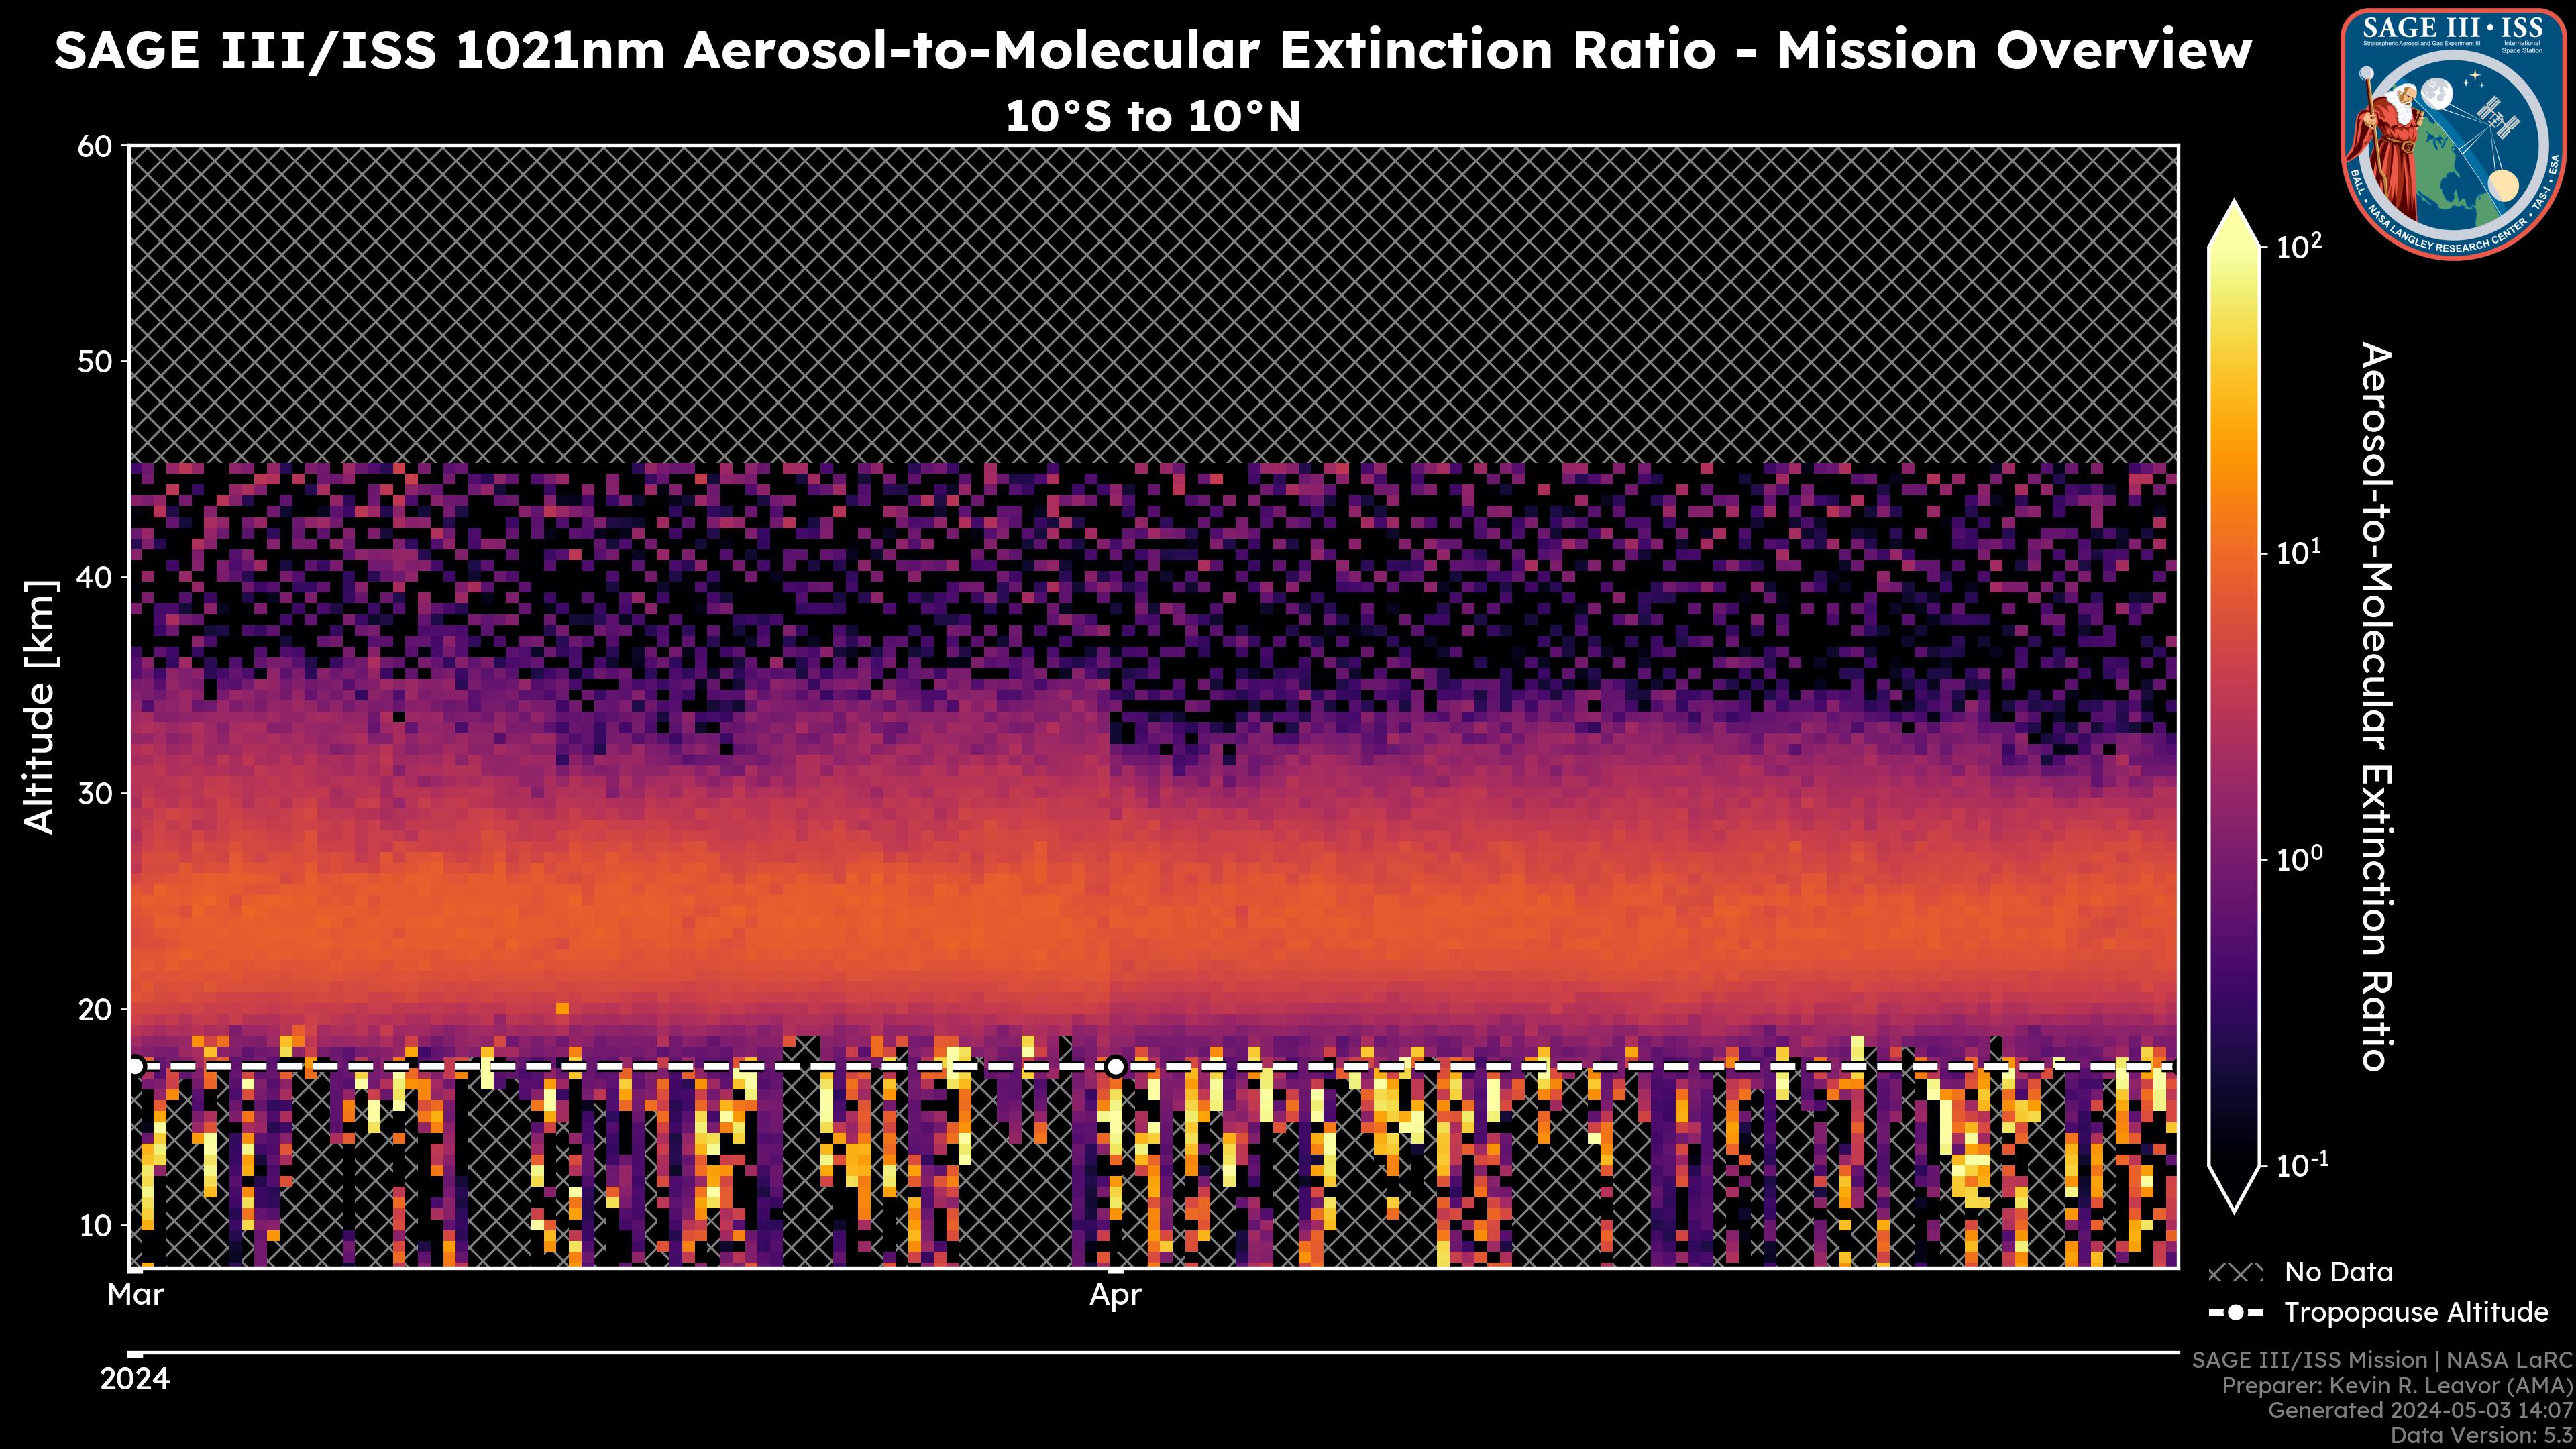 1021nm Aerosol-to-Molecular Extinction Ratio